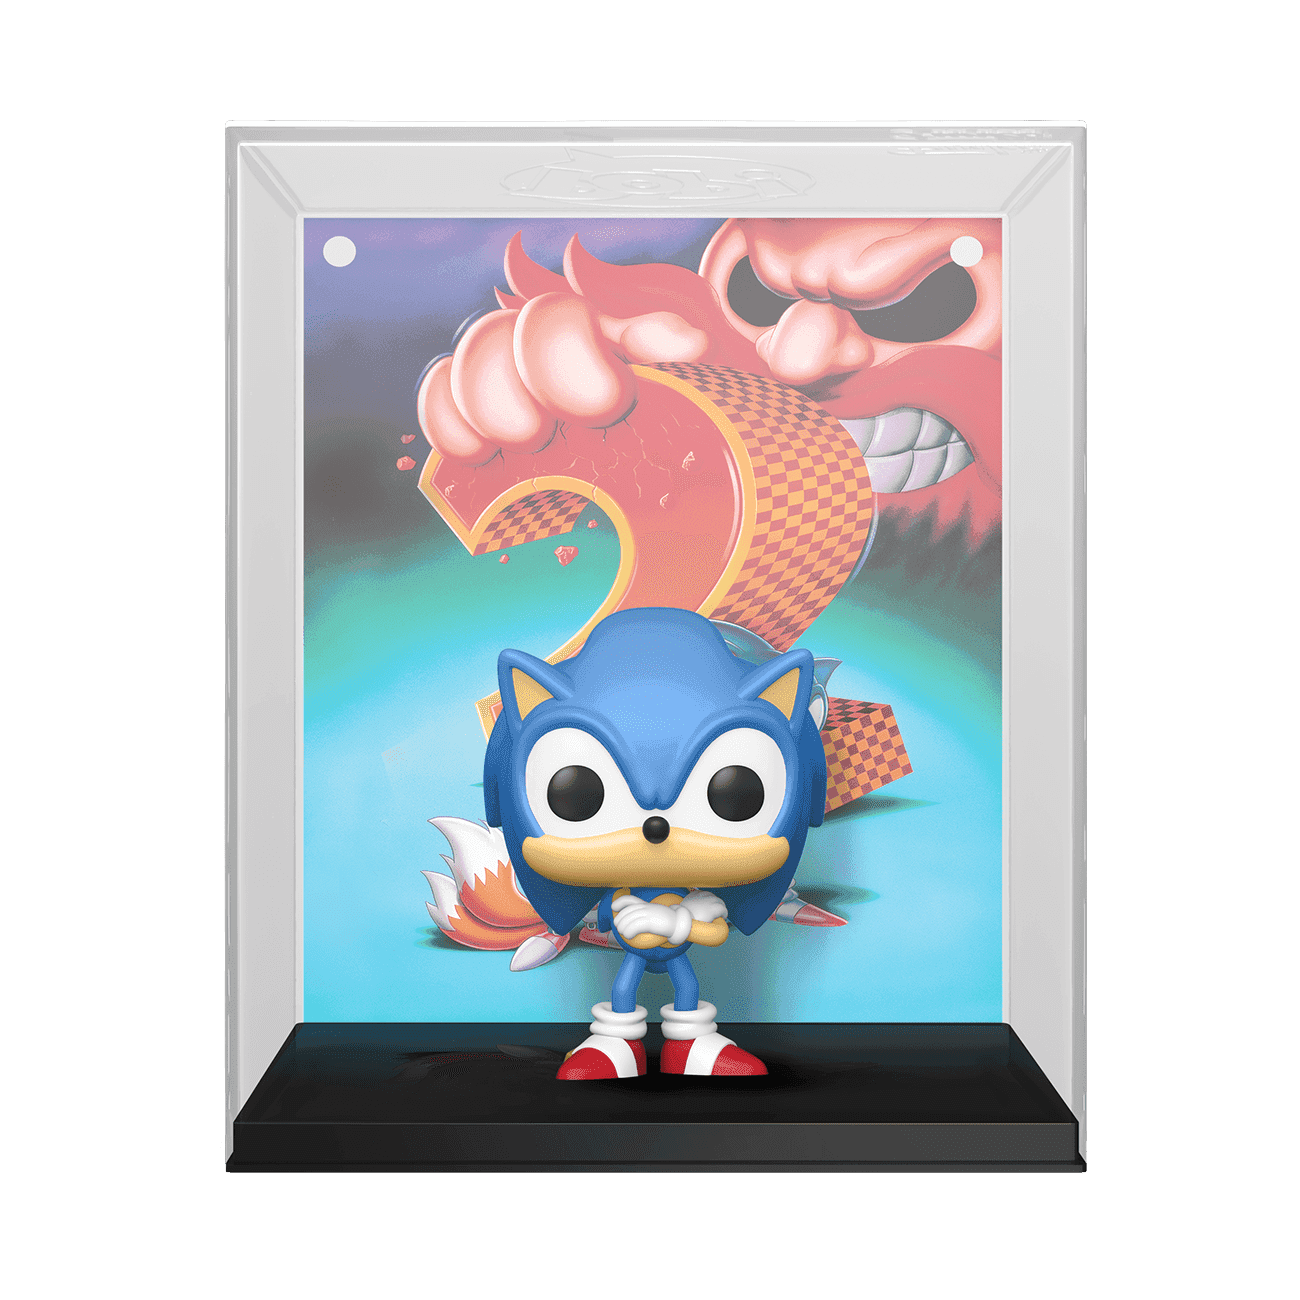 image de Sonic